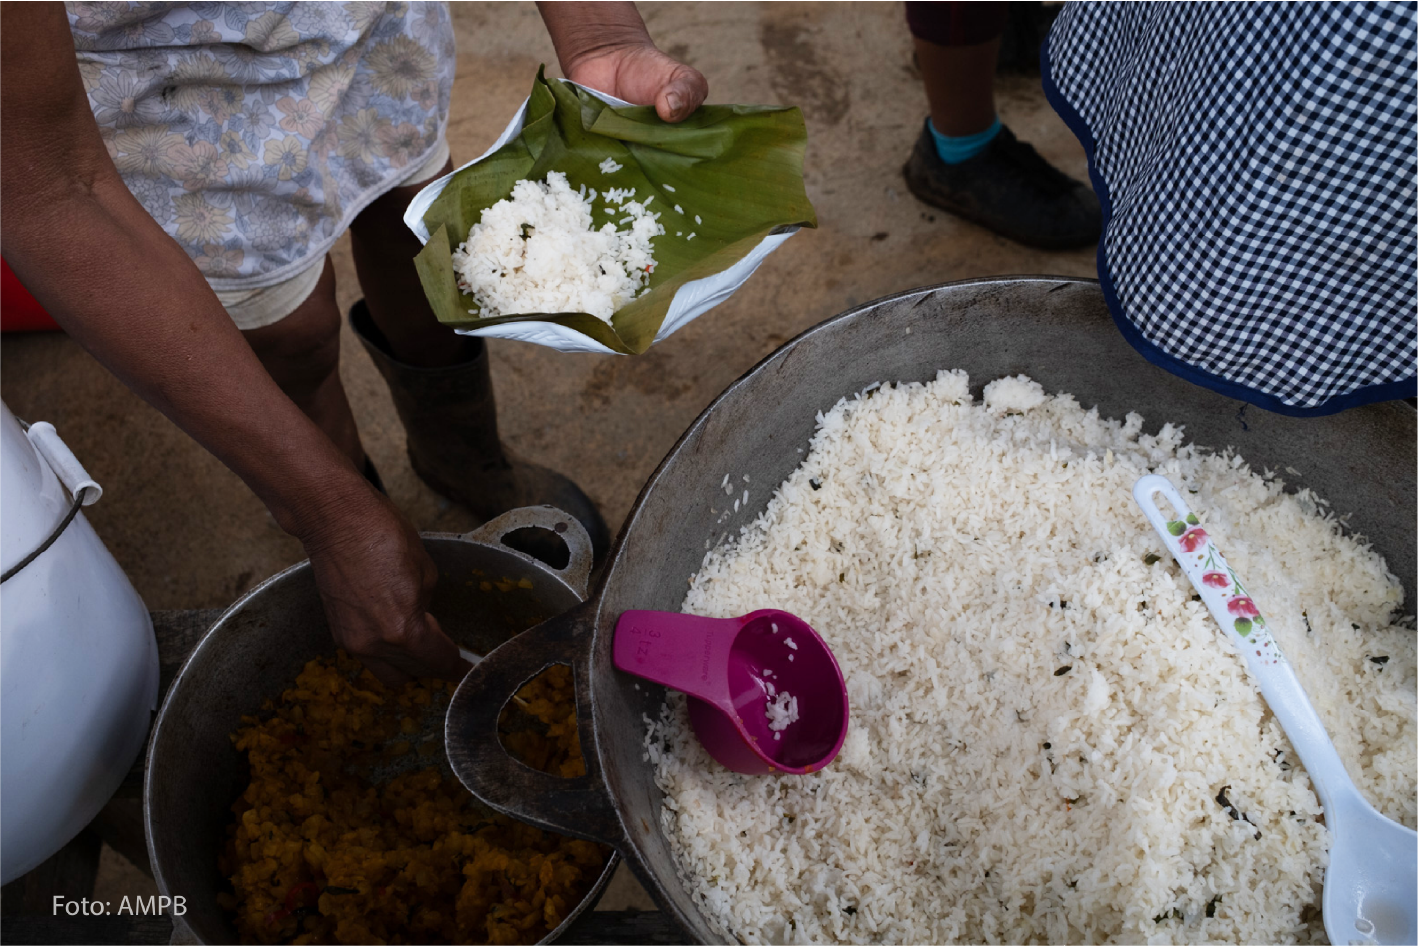 En Nairi-Awari hay pocas oportunidades de empleo. La comunidad le ha hecho frente a esta limitante con su iniciativa turística y con la producción de alimentos propios. Anteriormente, les tomaba alrededor de 1 día comprar alimentos fuera de la comunidad.